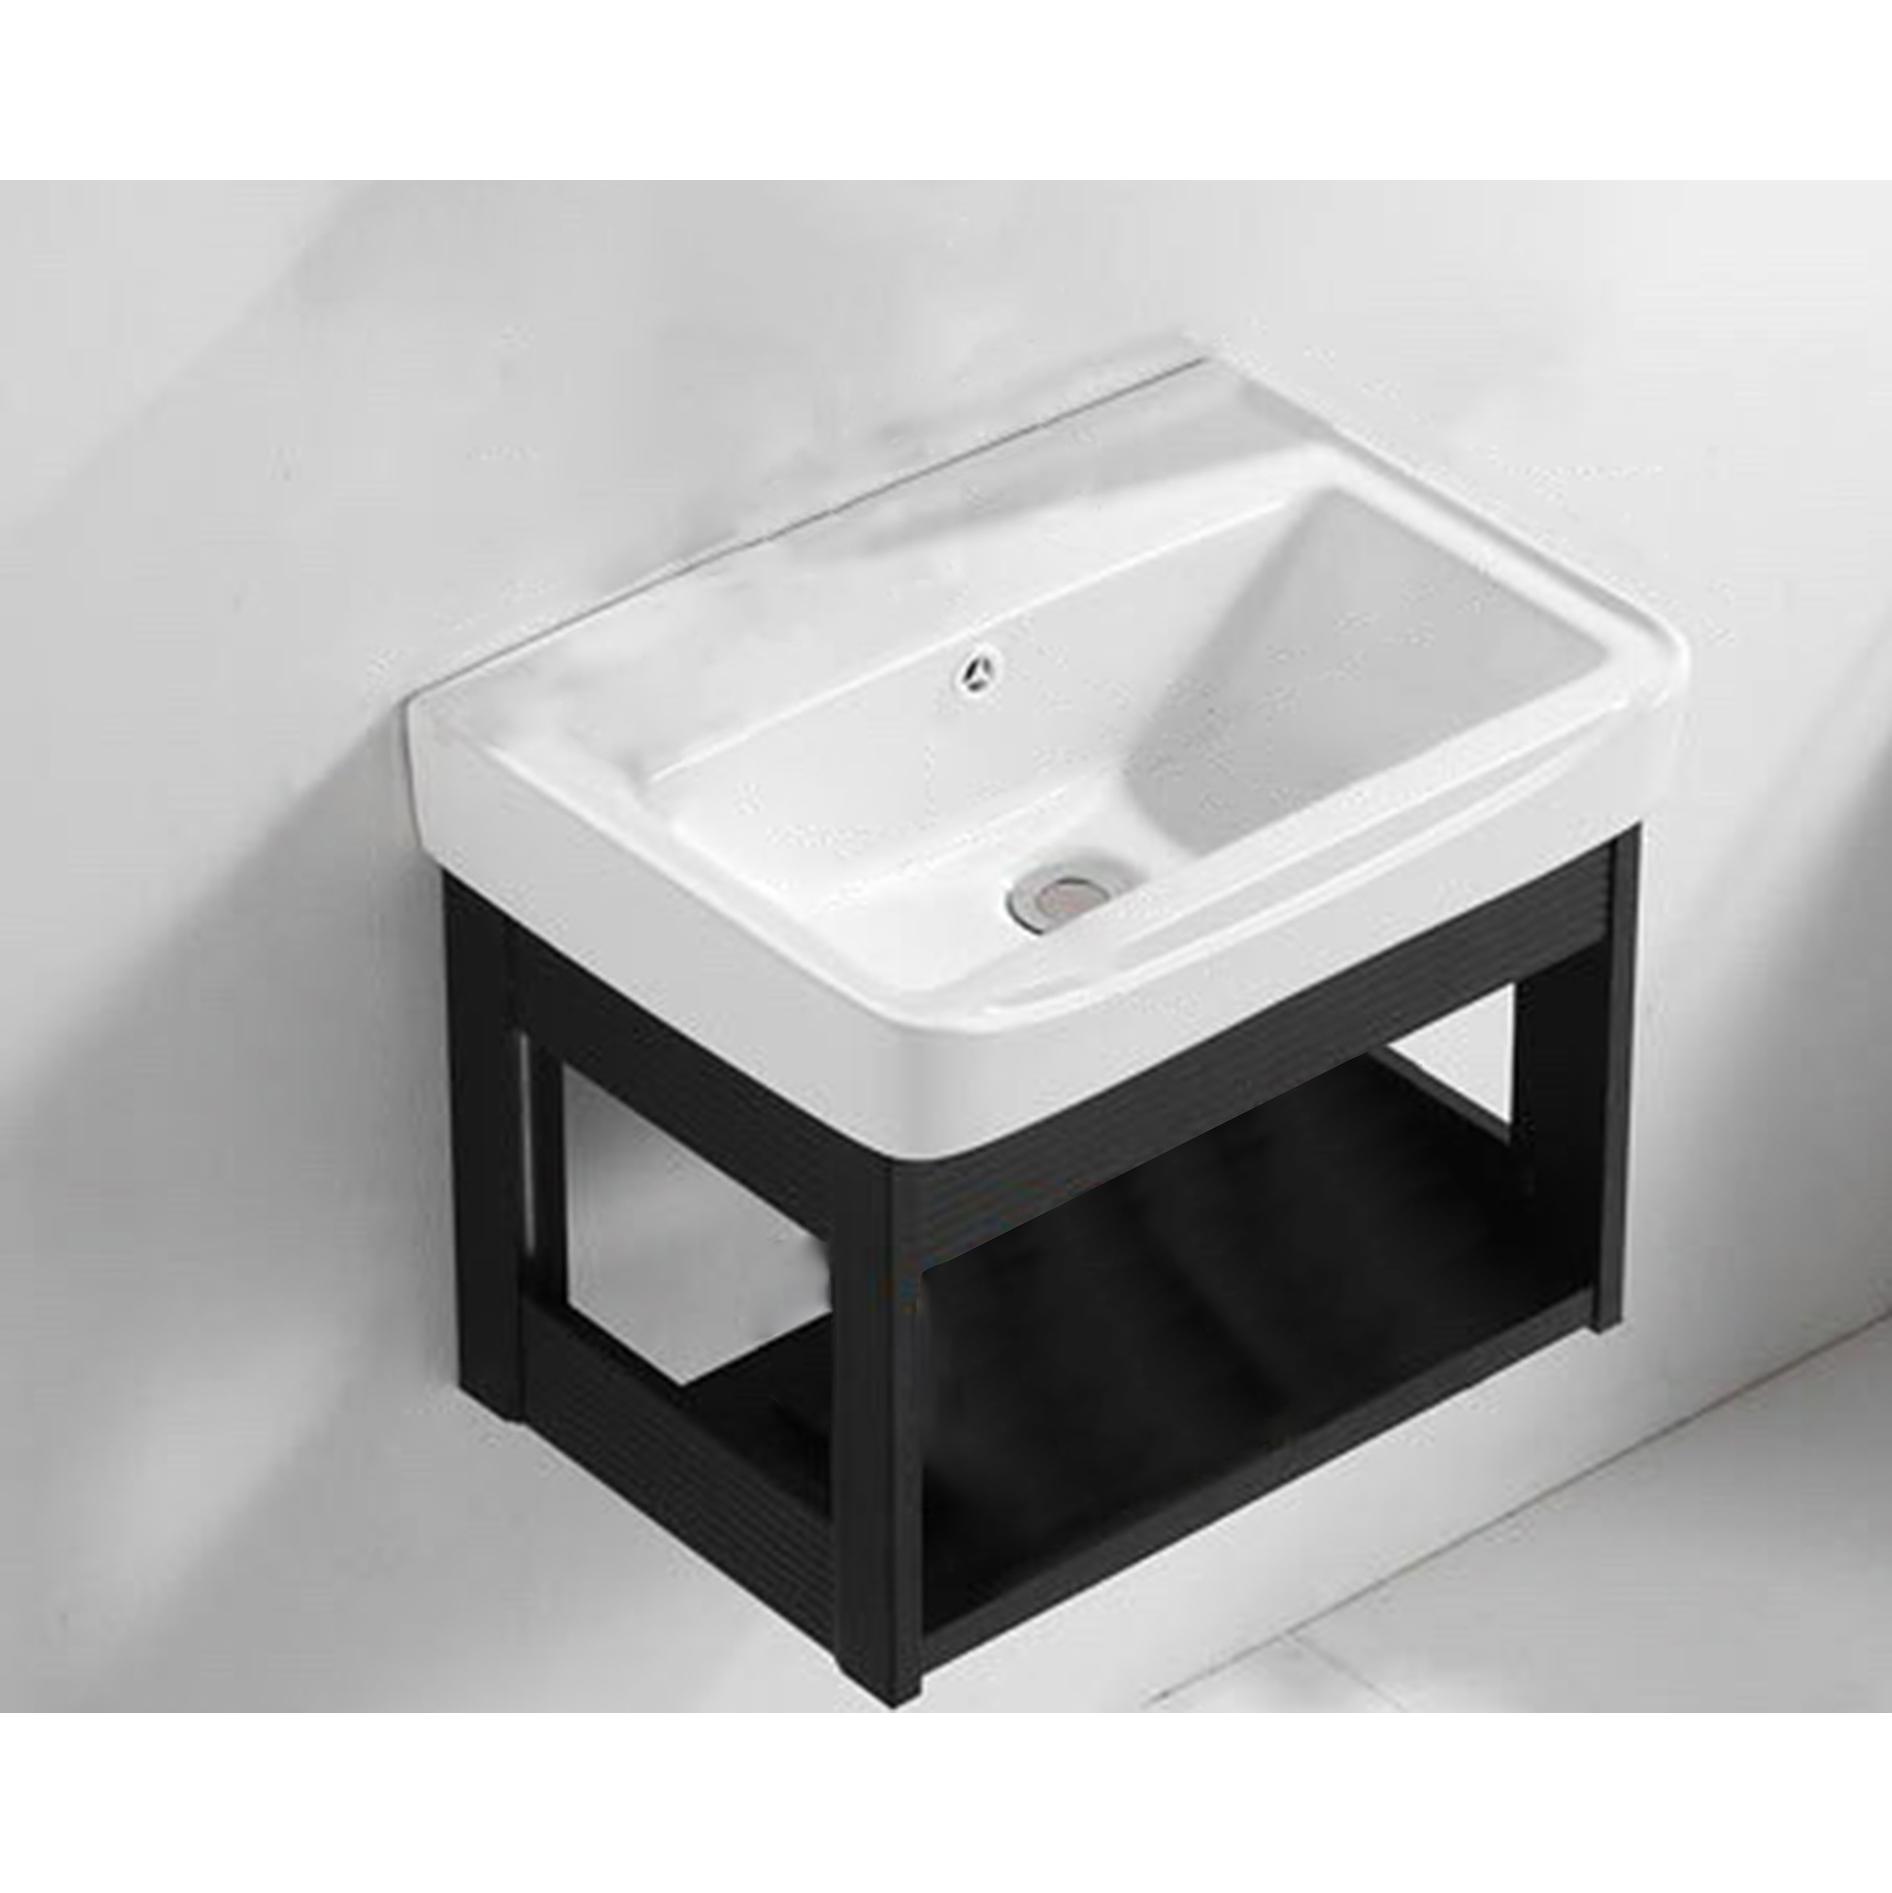 Bộ tủ chậu lavabo mini - COMBO 4 Món Tủ Chậu Lavabo + Gương + Kệ Gương Thông Minh Gọn Gàng Sang Trọng Cho Phòng Tắm